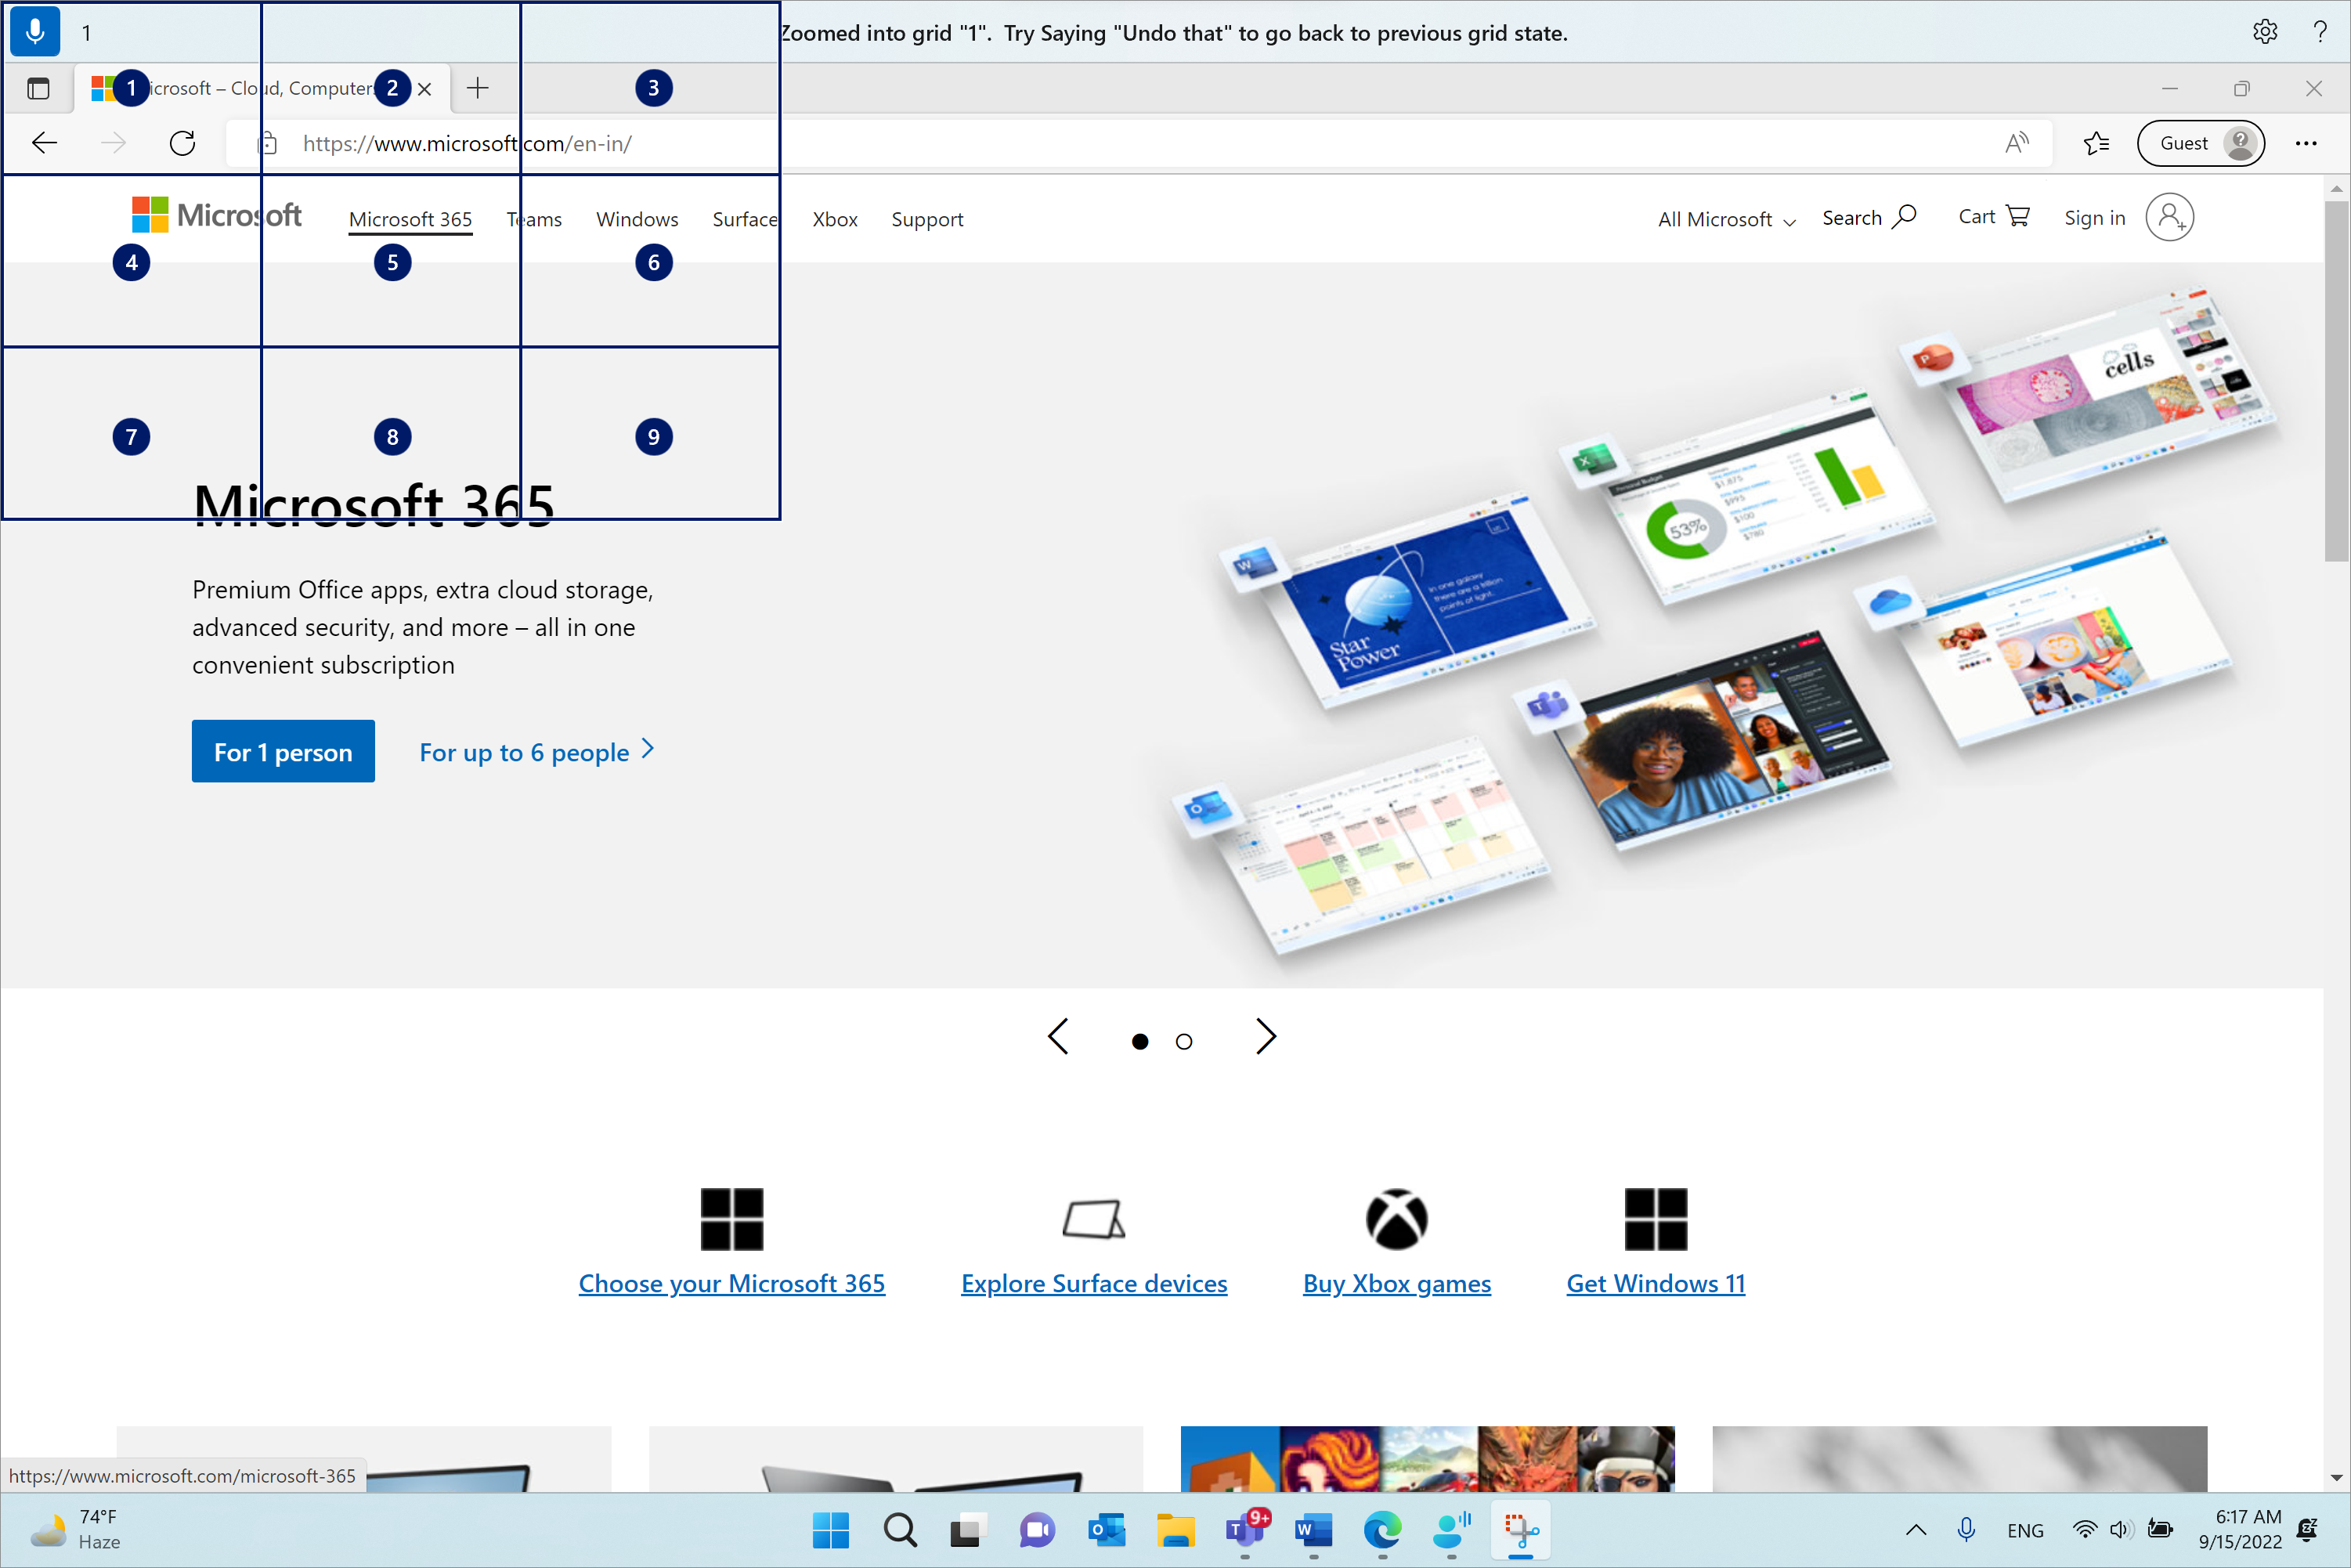 Microsoft Edge on avatud ja lehel Microsoft.com. Häälpääsuriba on üleval ja kuulamisolekus. Välja antud käsk on "1" ja kuvatud tagasiside on "Suurendatud ruudustikku "1". Eelmise ruudustiku oleku taastamiseks proovige öelda "võta see tagasi".